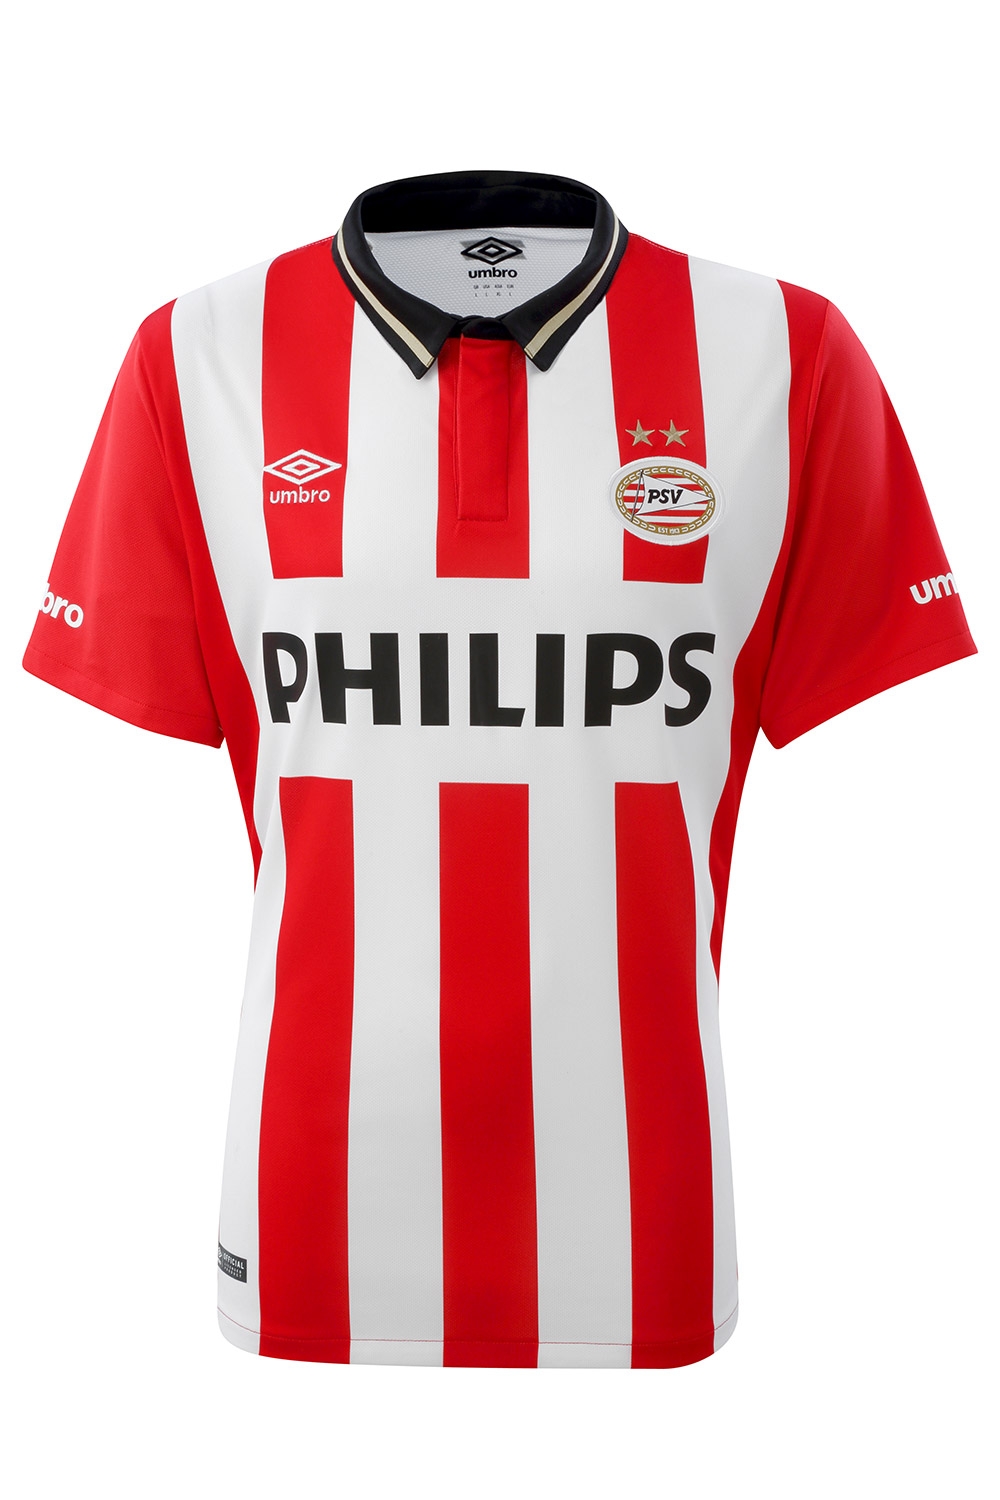 Wedstrijd Logisch halen PSV thuisshirt 2016 - PSV shirt 15/16 kopen